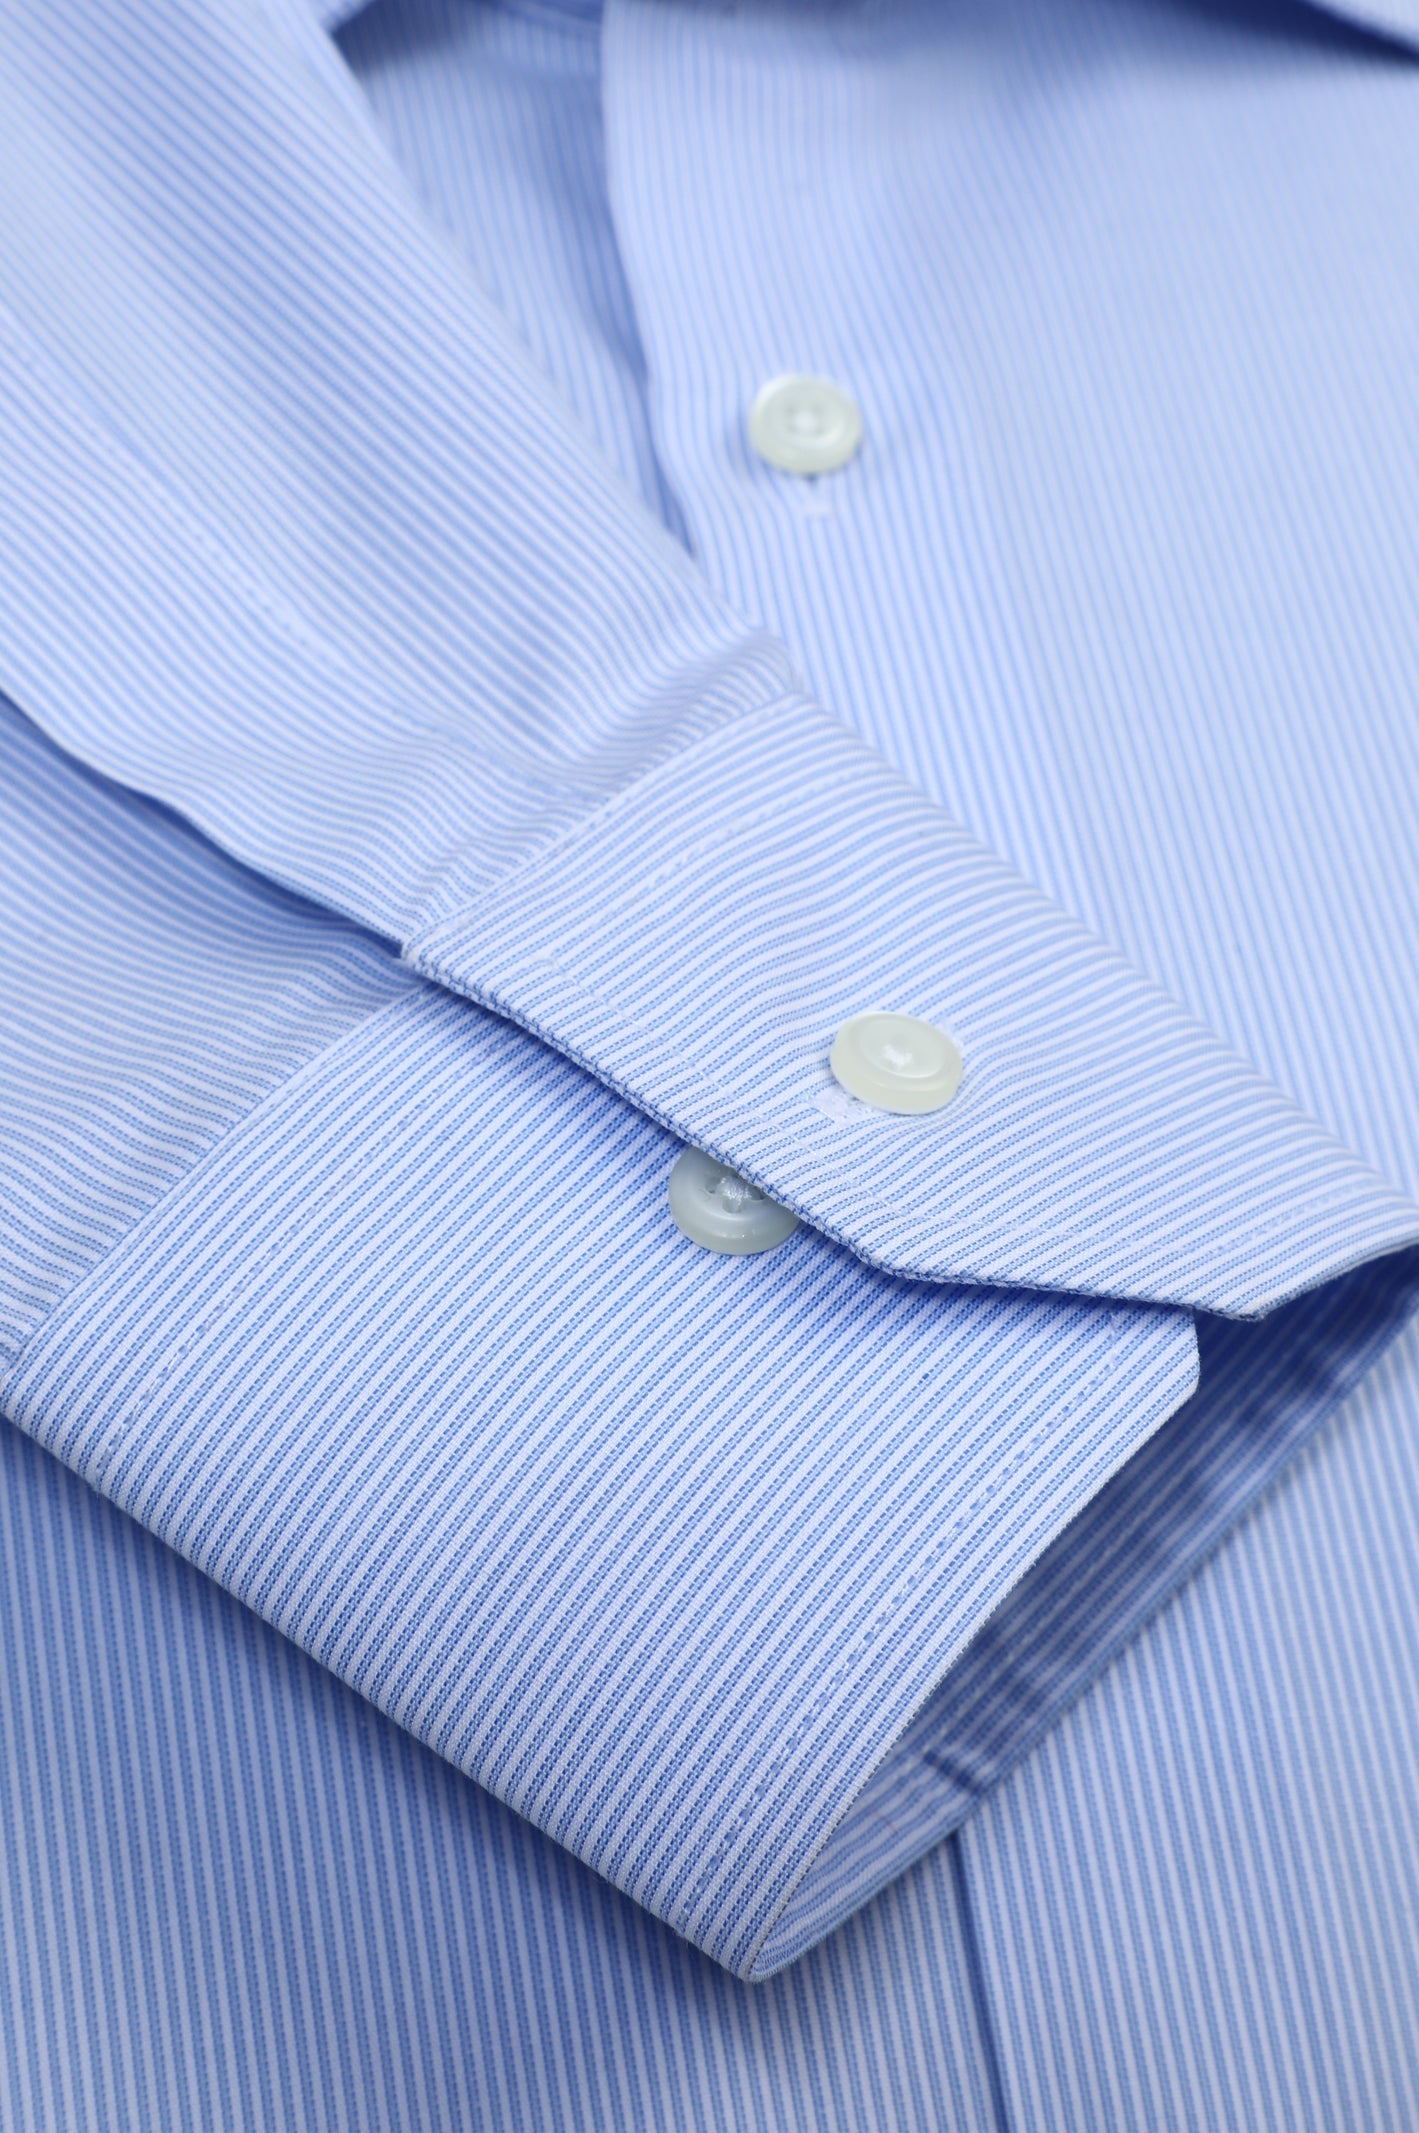 Formal Men Shirt SKU: AD27077-L-BLUE - Diners